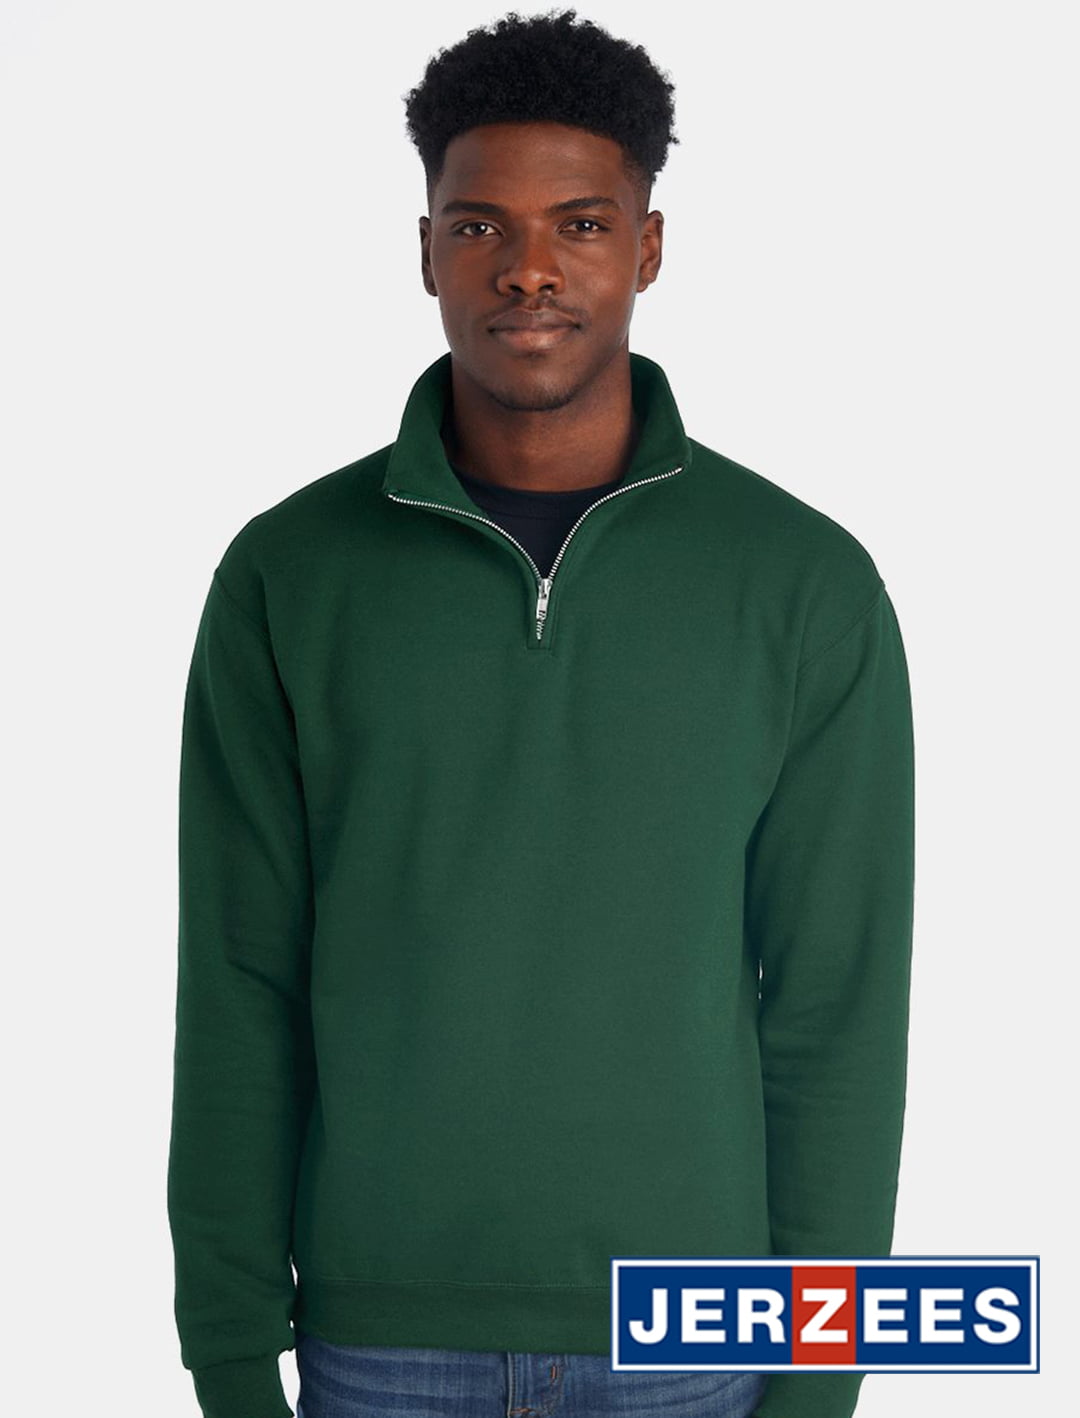 JERZEES Nublend Cadet Collar Quarter-Zip Sweatshirt #995MR